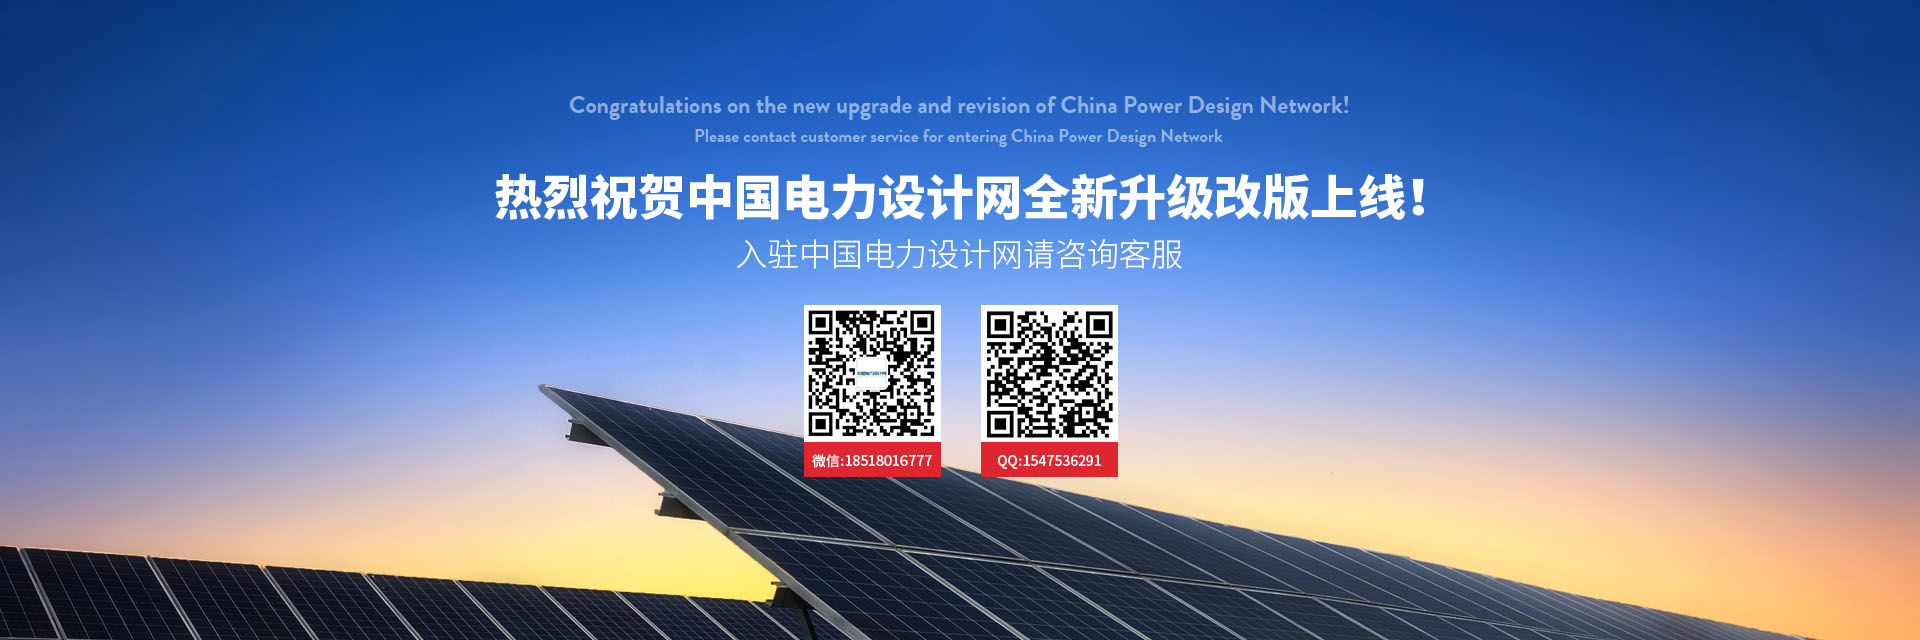 中国电力设计网新上线